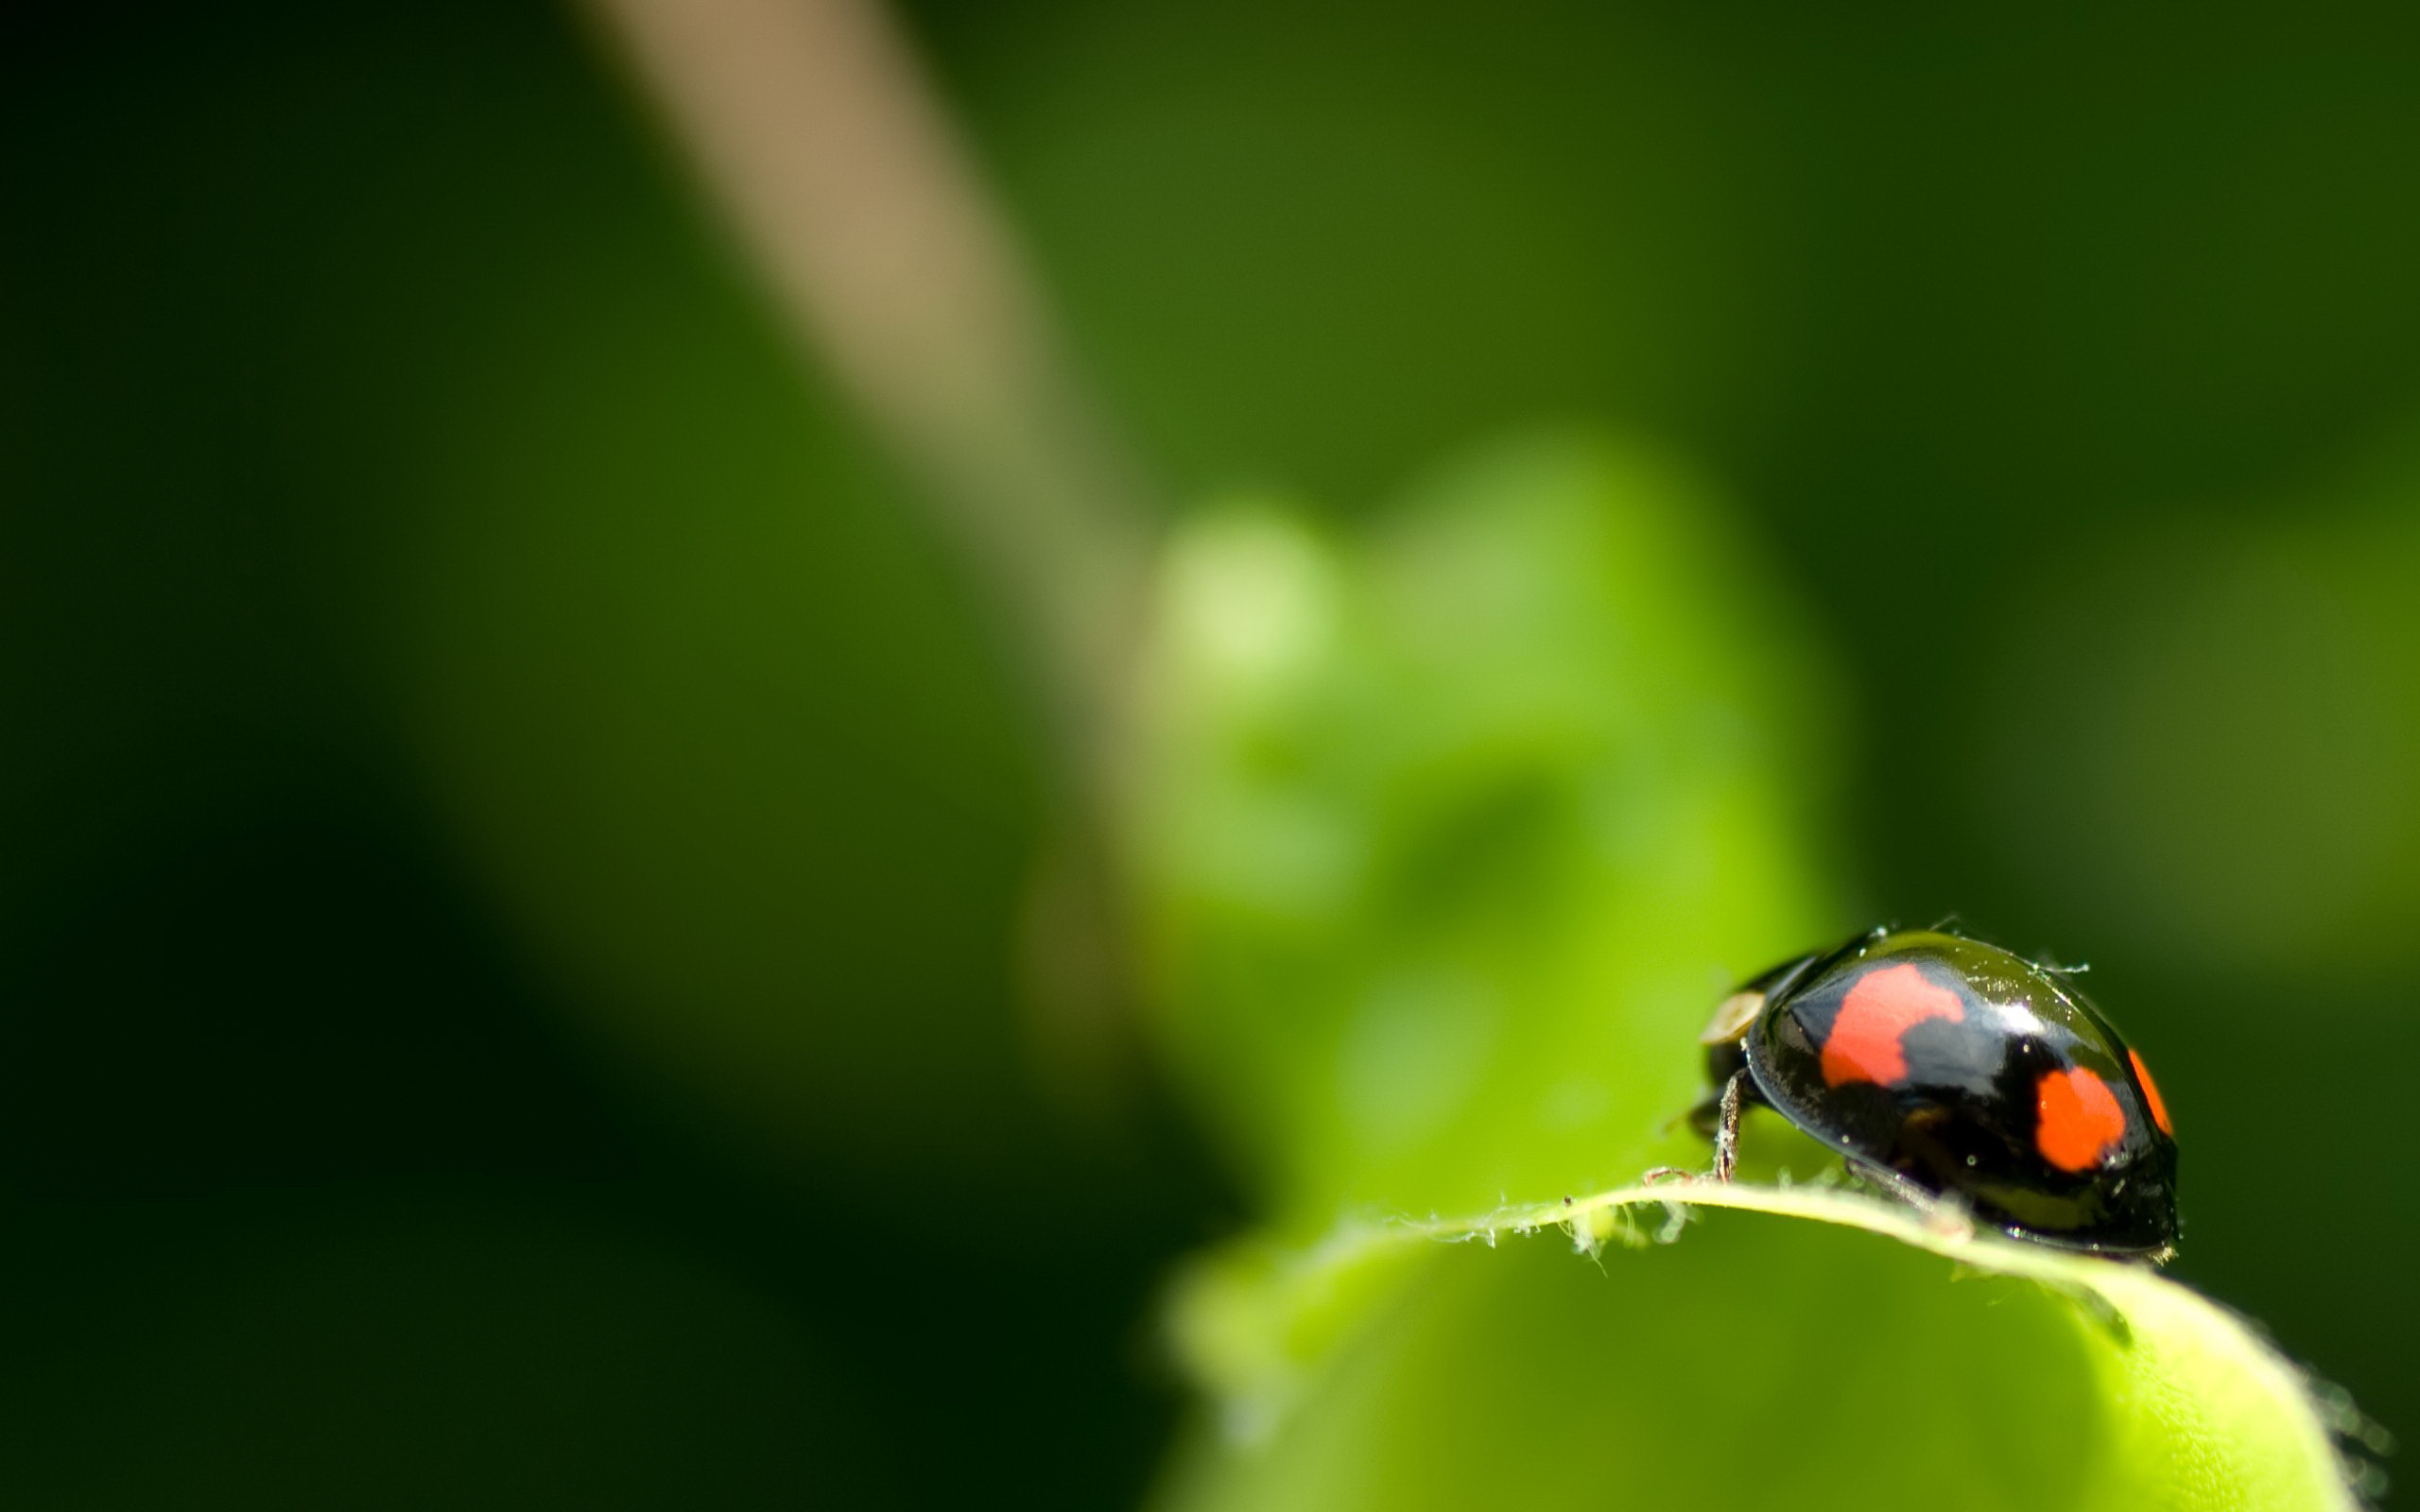 Ladybug crawling on a plant